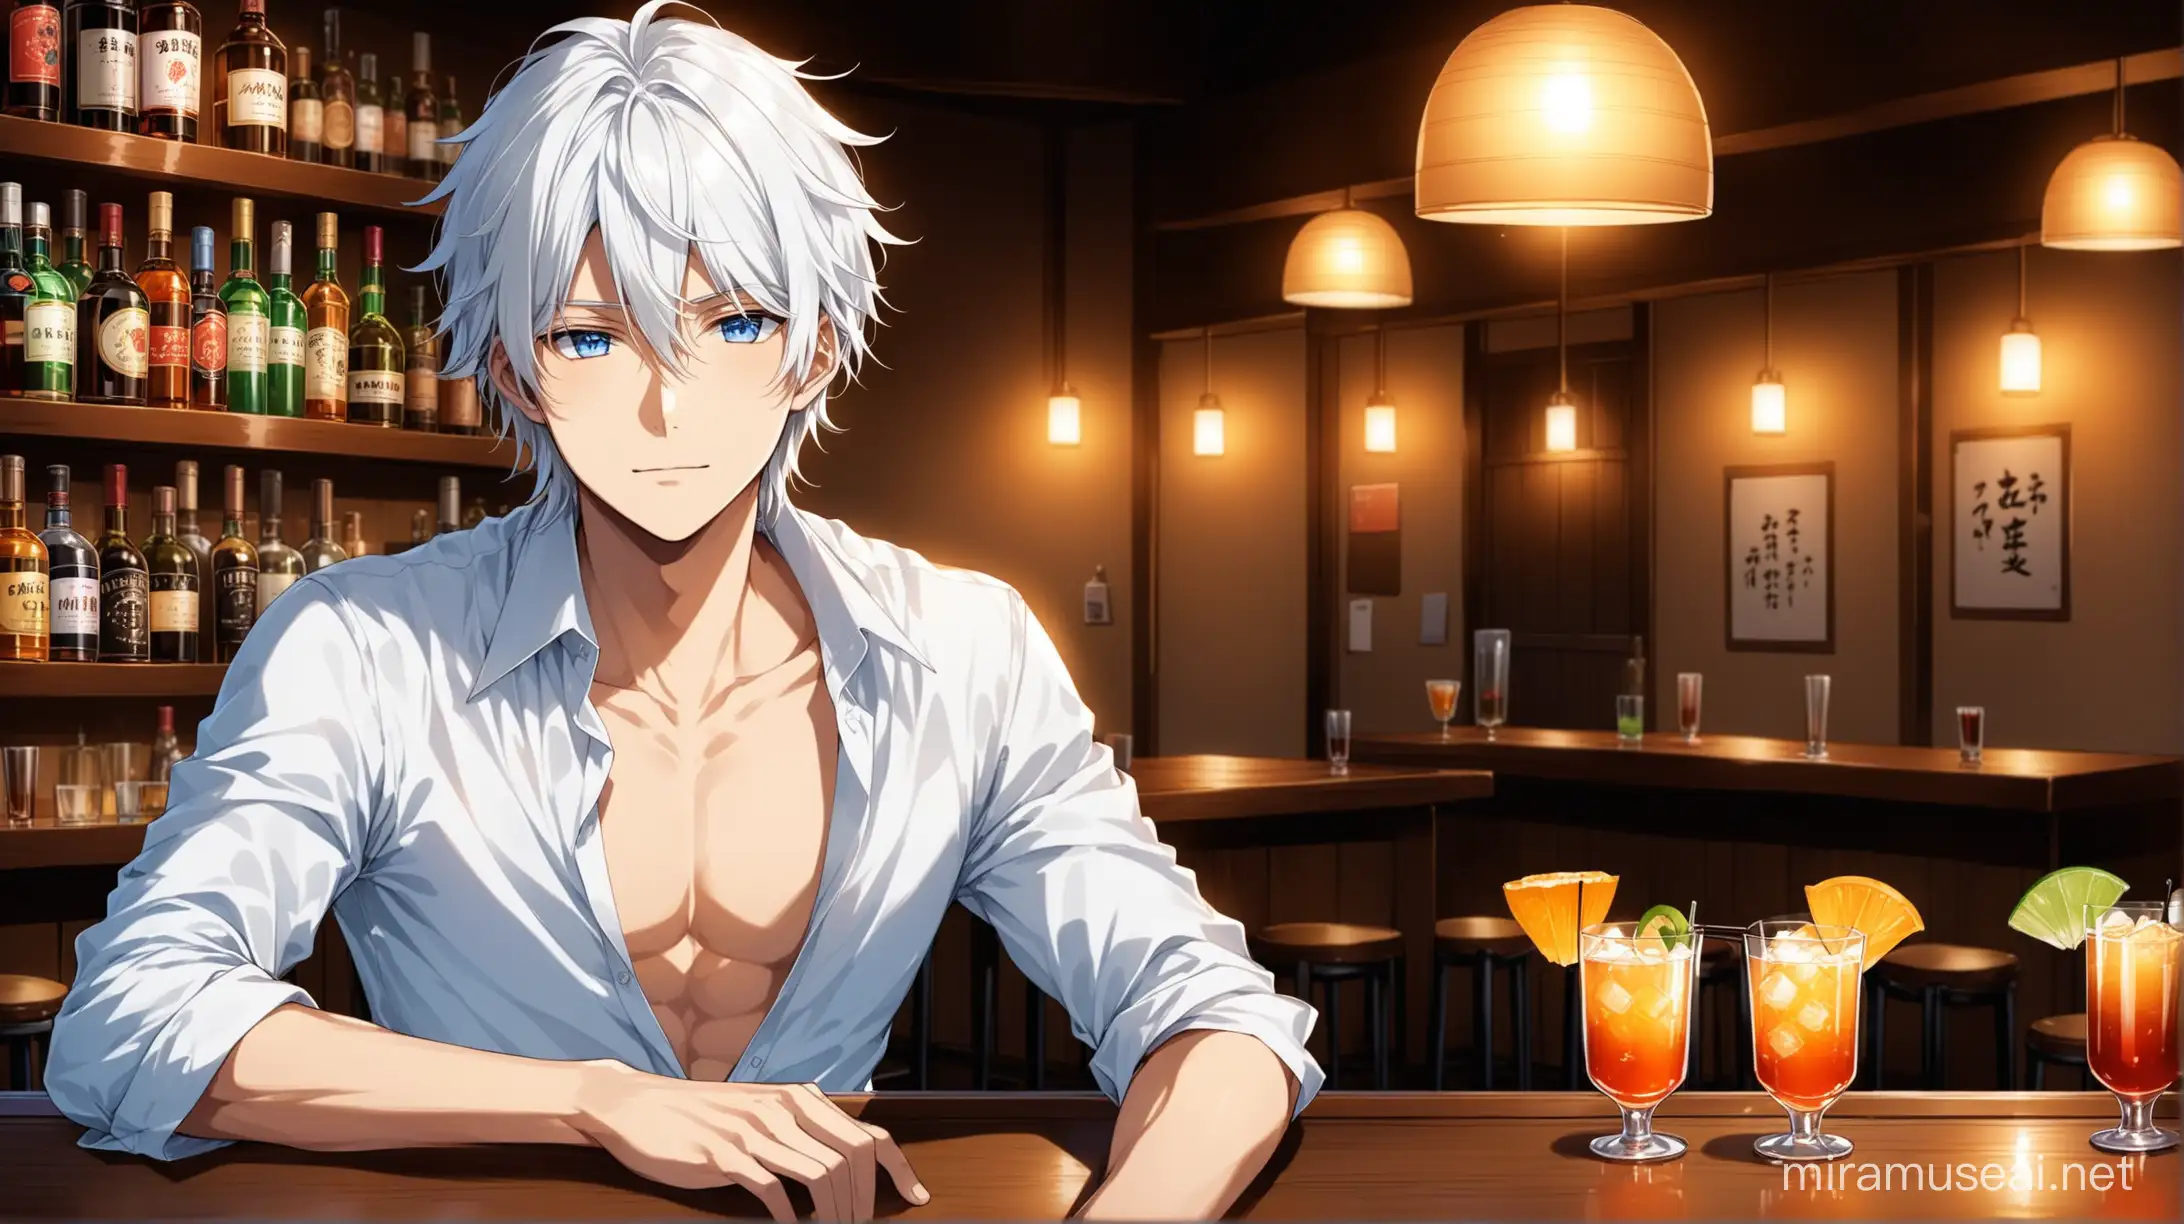 Imagines moi une scène digne d'un animé japonais.
Dans un petit bar à l'ambiance intimiste, un garçon aux cheveux blanc ébouriffés et aux yeux bleus , portant une chemise un peu ouverte dans le col.
Sur la table ou il est installé se trouve 2 petits cocktails.  